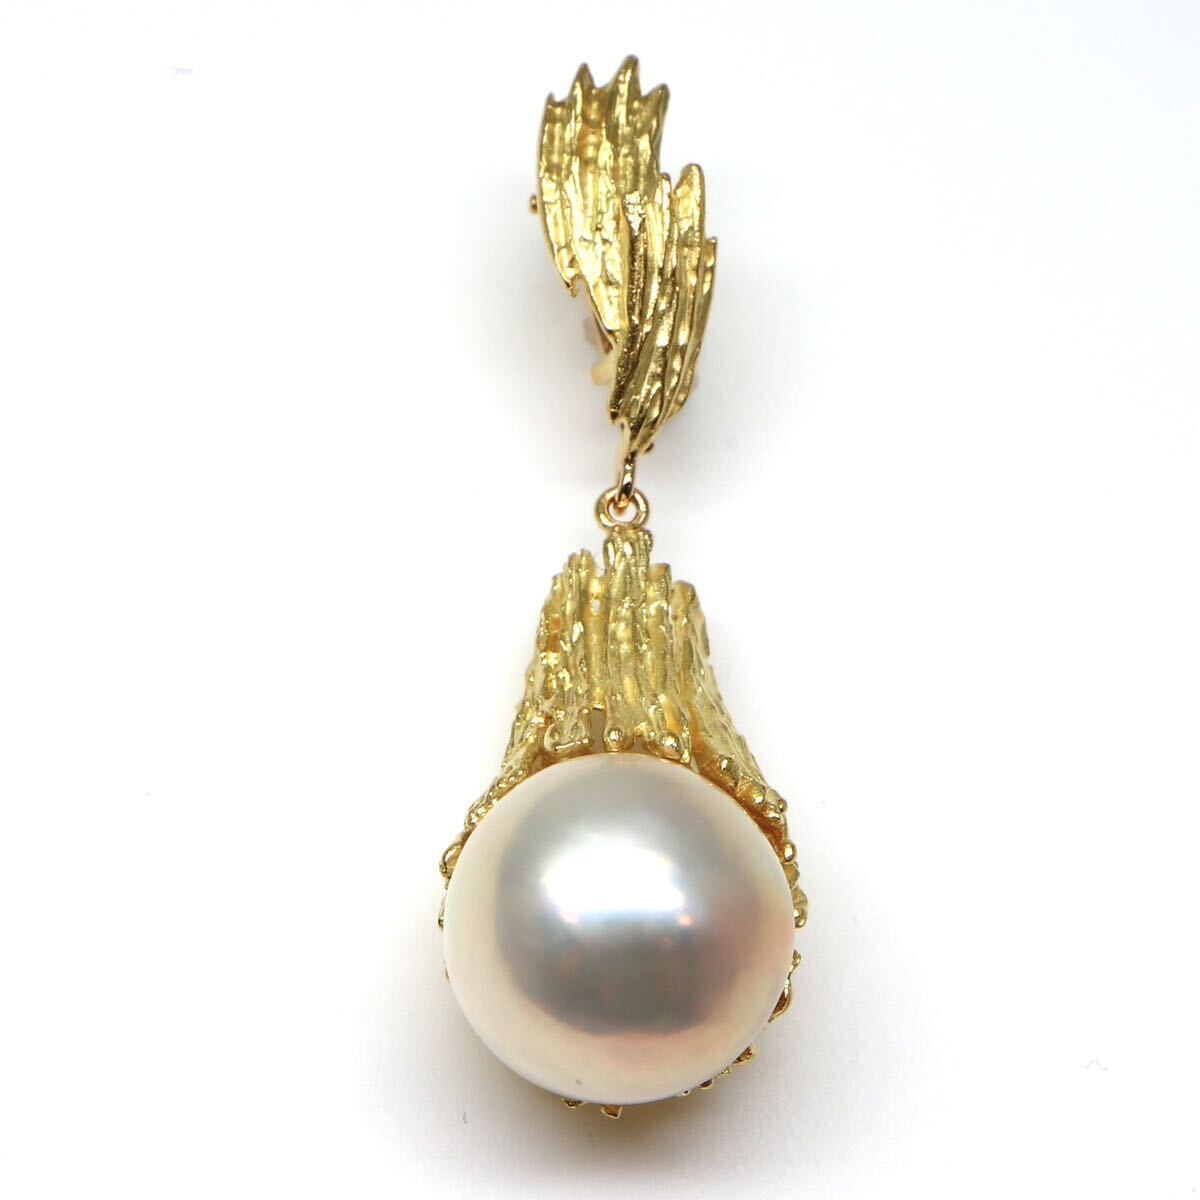 TASAKI(田崎真珠)◆K18 マベパールペンダントトップ◆A 約6.7g パール pearl pendant necklace jewelry ジュエリー ED1/ED1の画像1